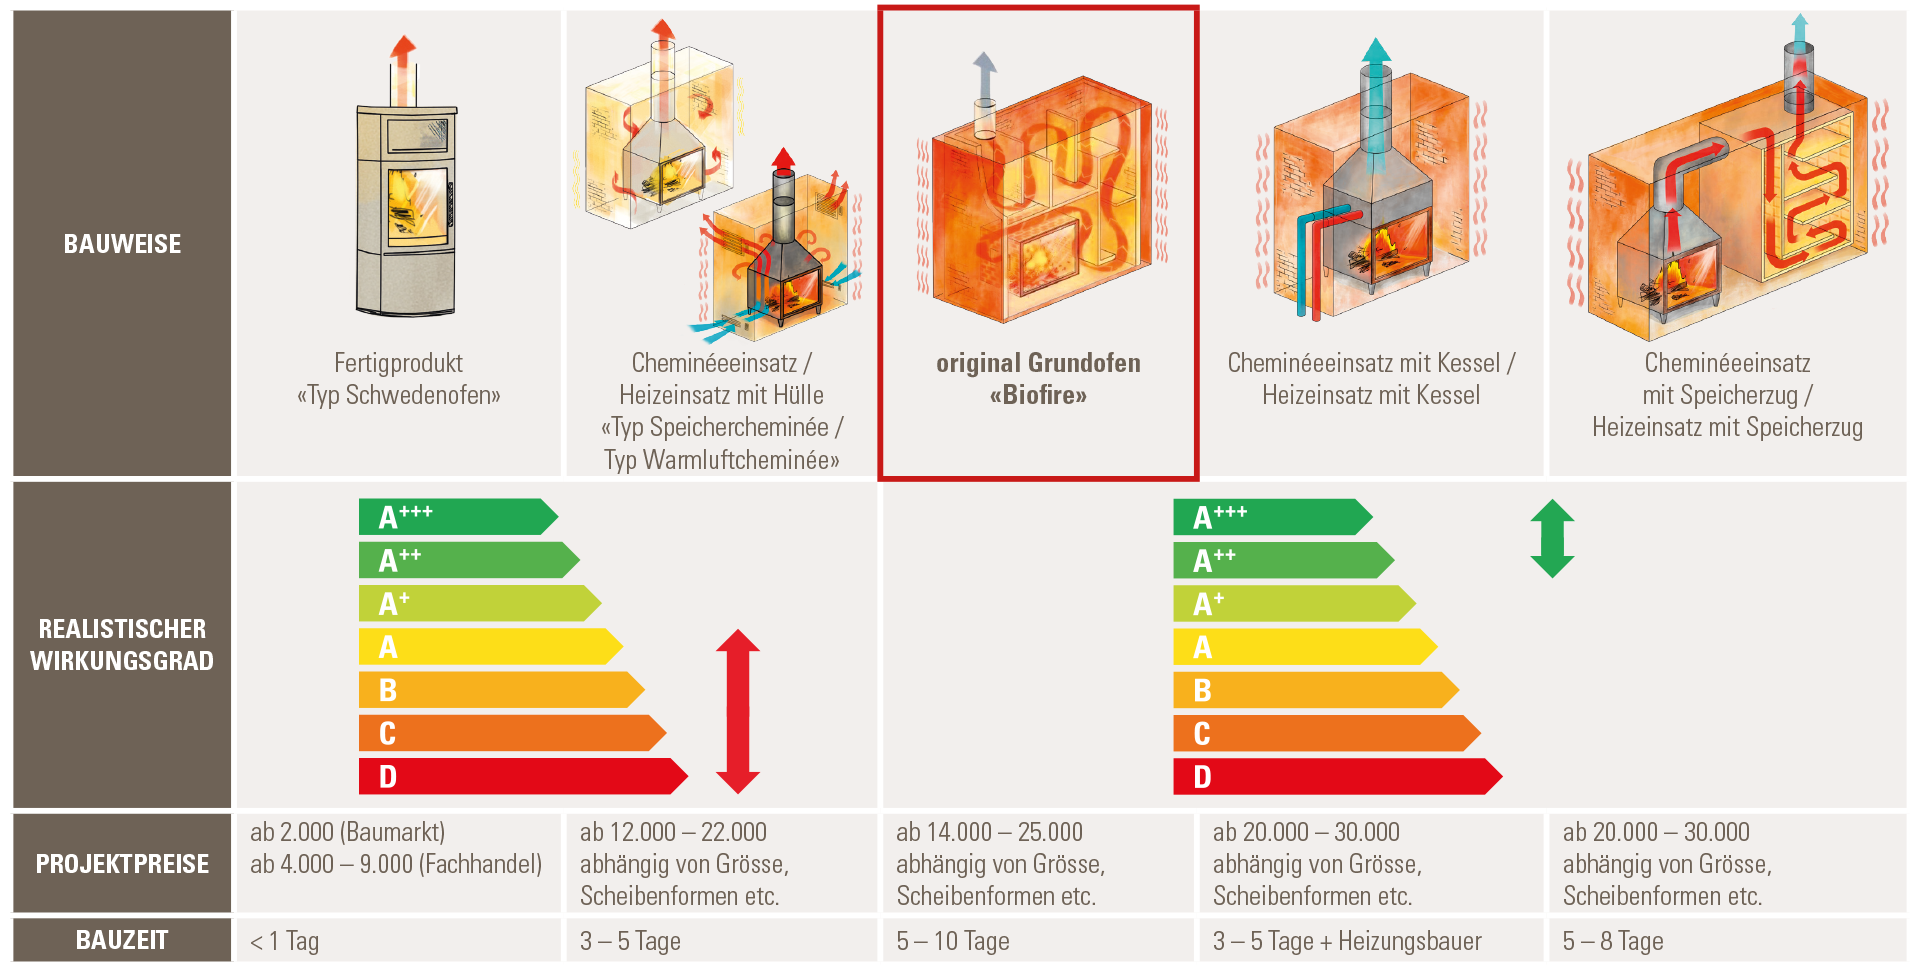 Grafik mit Preisvergleich zwischen der Biofire Bauweise und anderen Cheminée Bauweisen wie Cheminéeinsatz, Grundofen, Schwedenofen